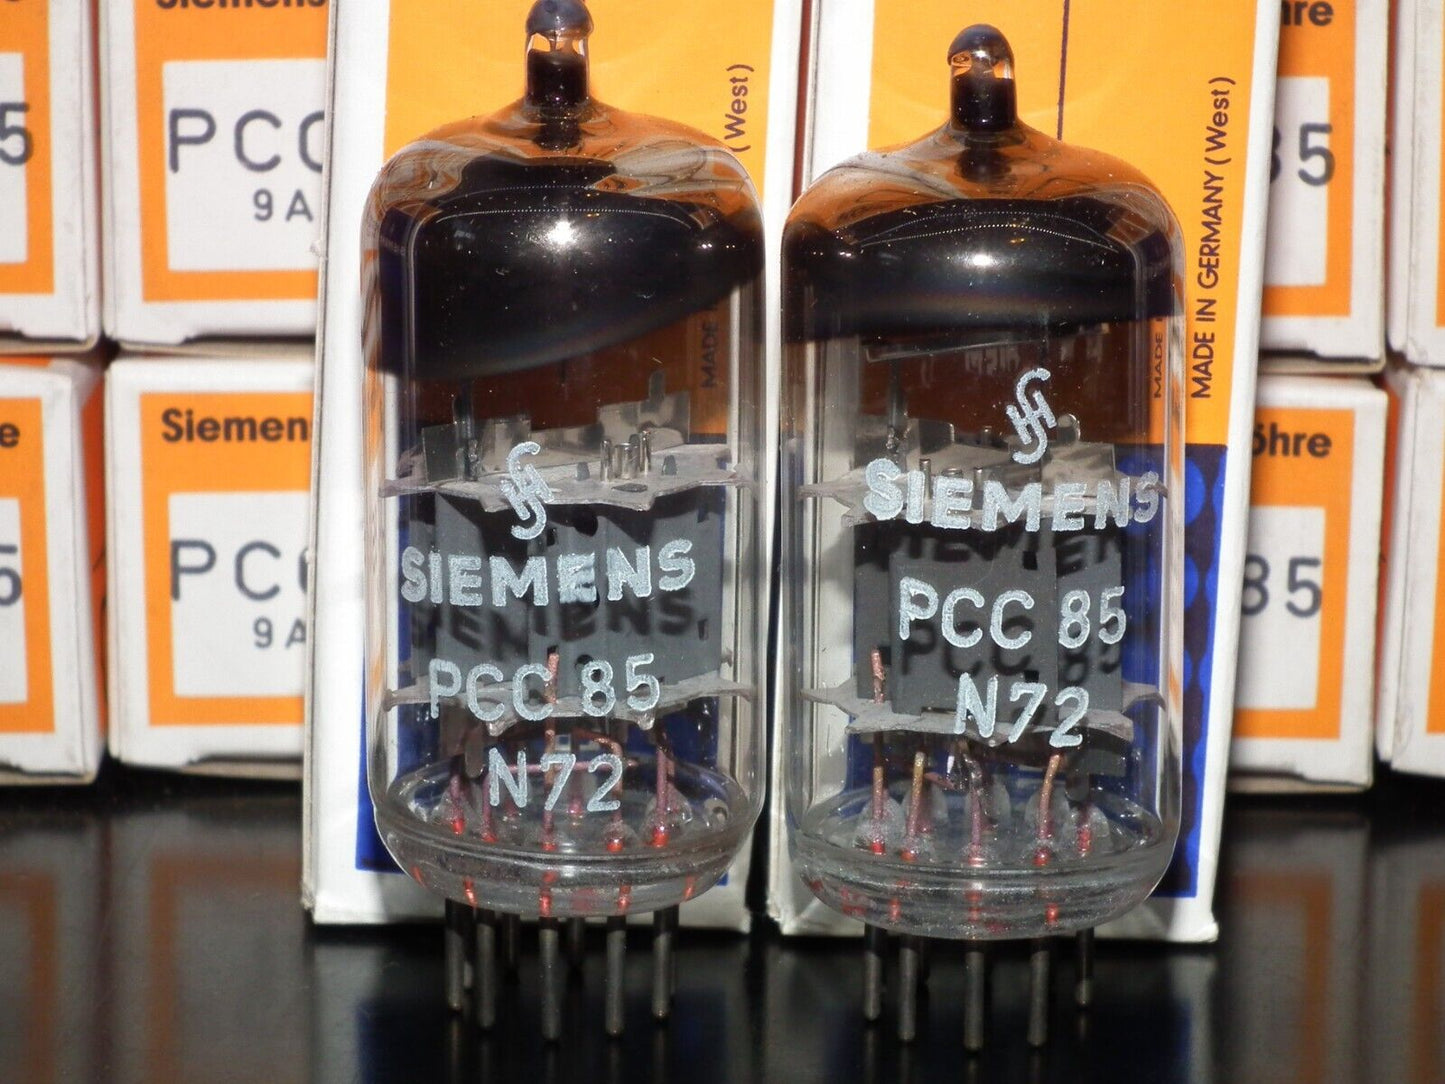 PCC85 Siemens 9AQ8 Matched Pair (Two Tubes) NOS NIB